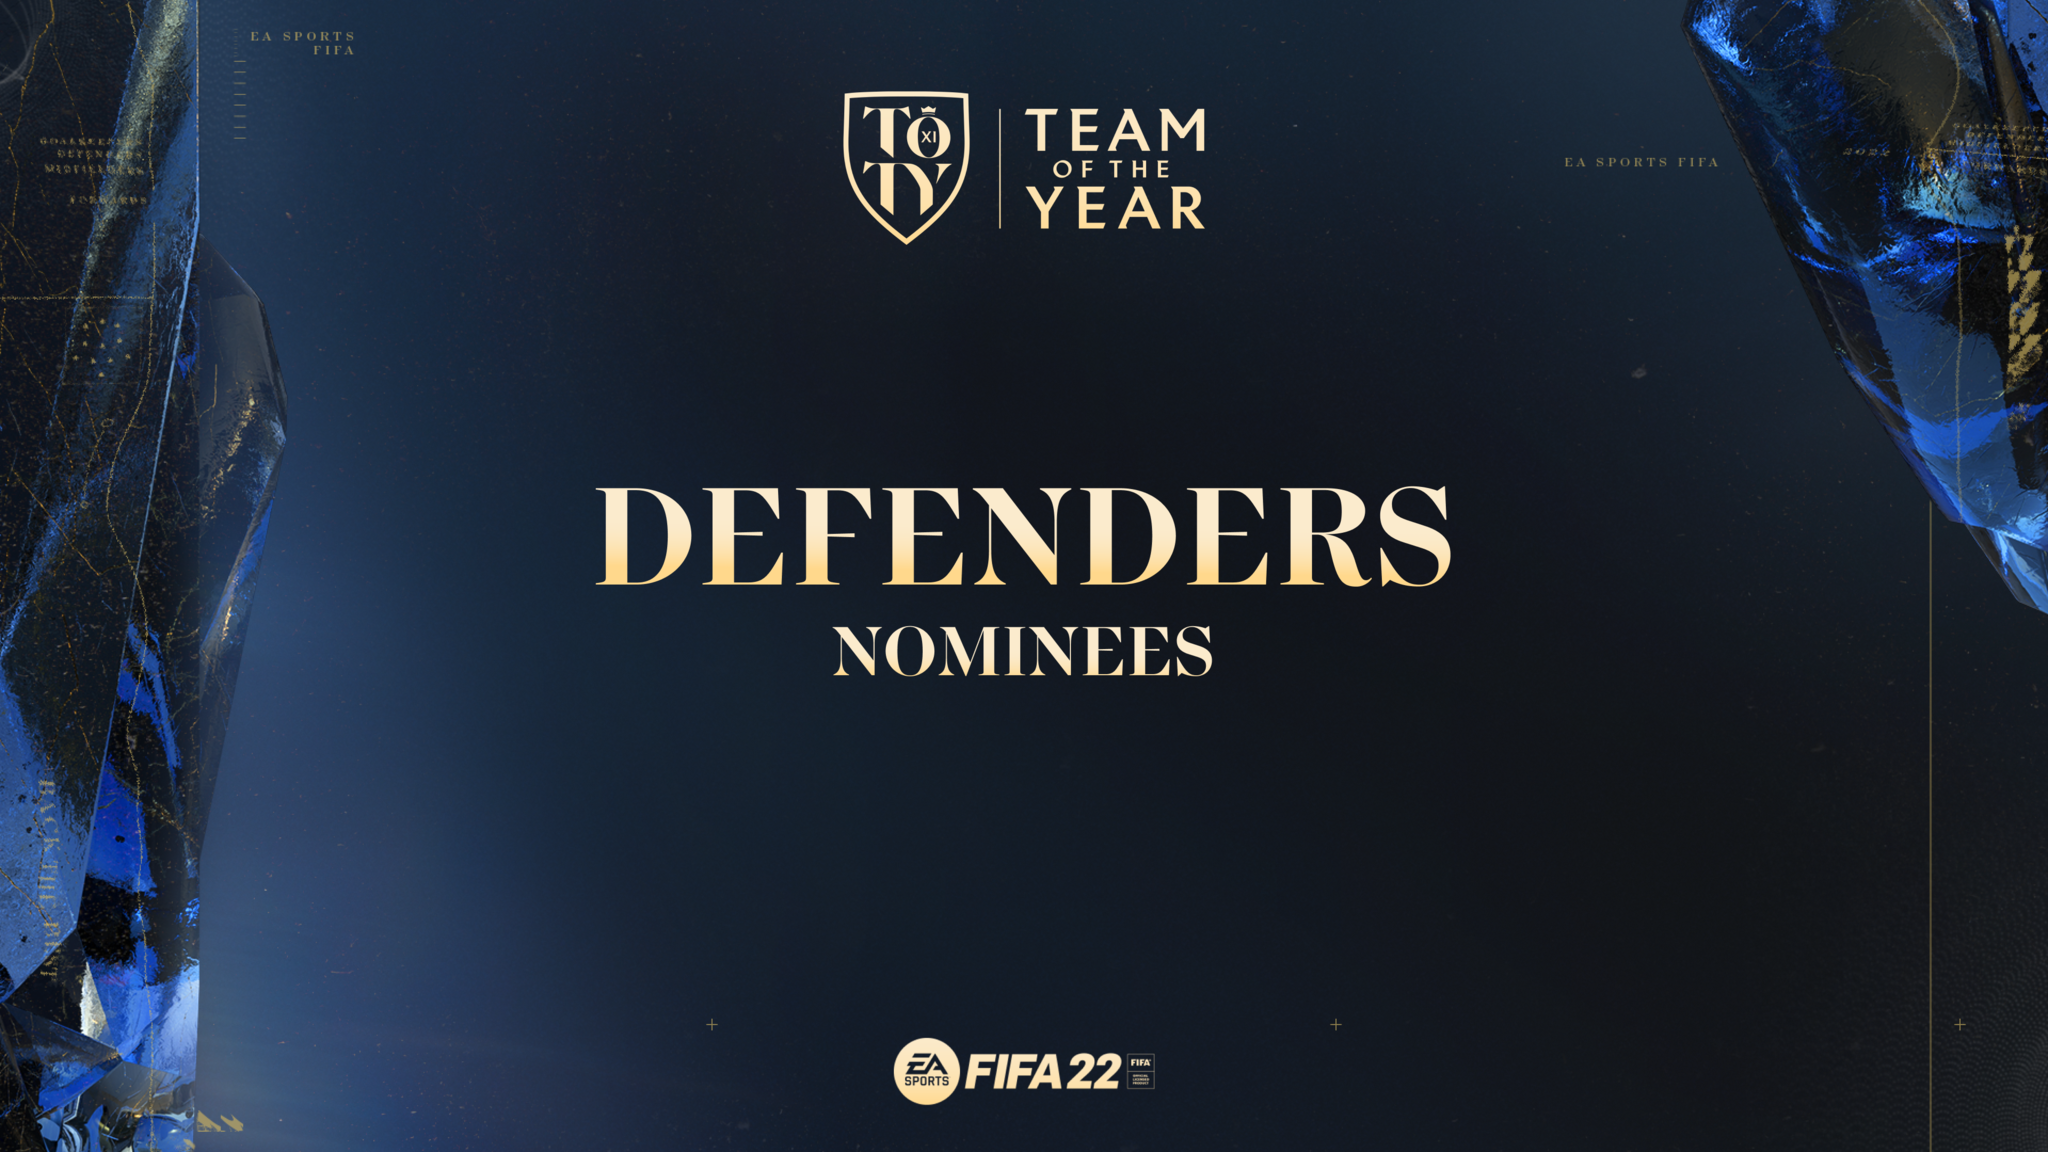 I difensori sono stati nominati per il FIFA 22 TOTY Award